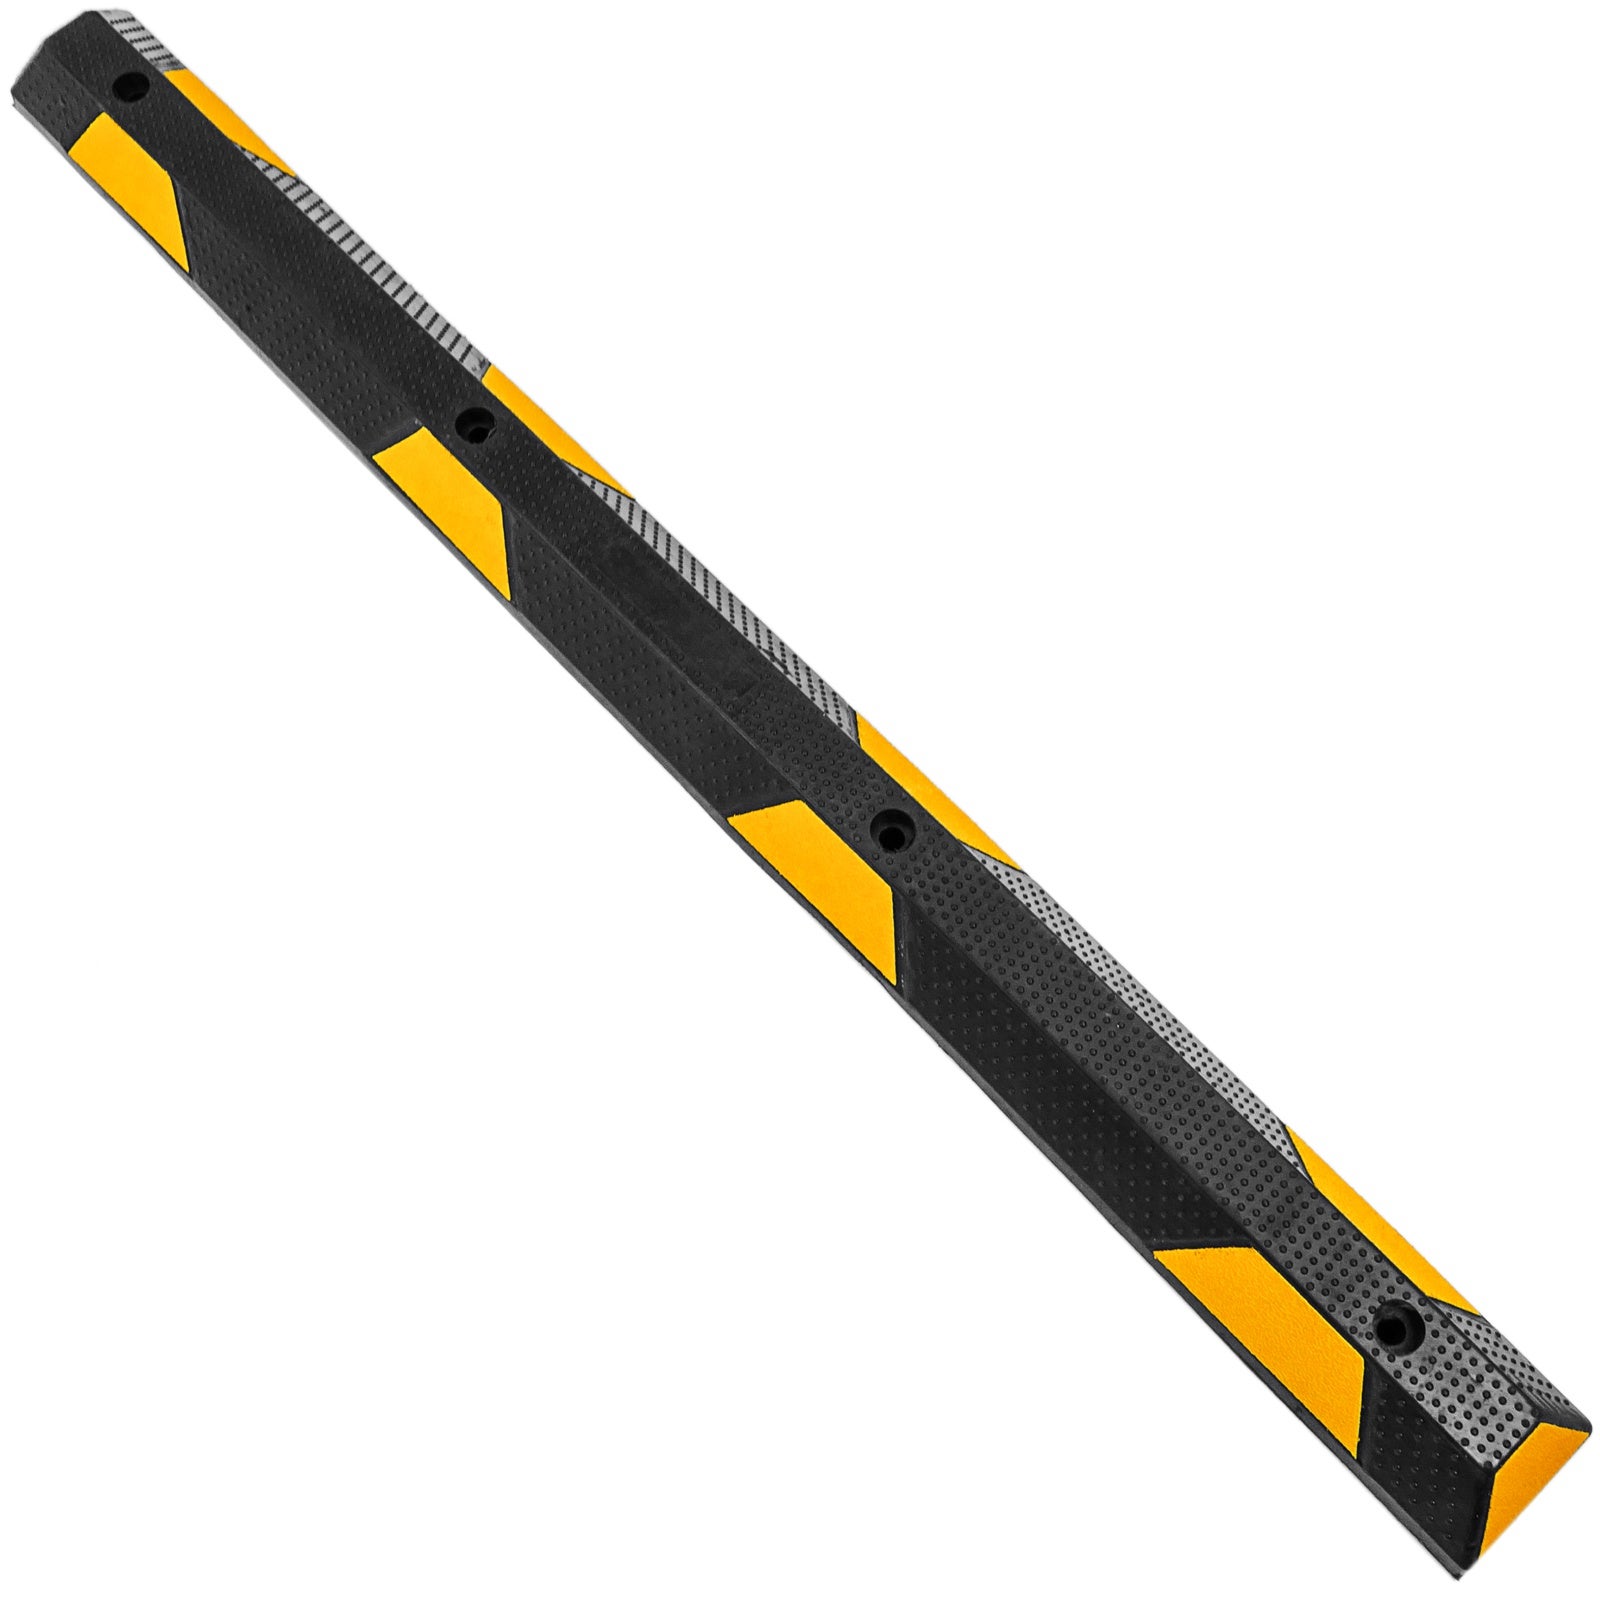 Fermaruota in gomma nera e gialla per parcheggio 182 cm